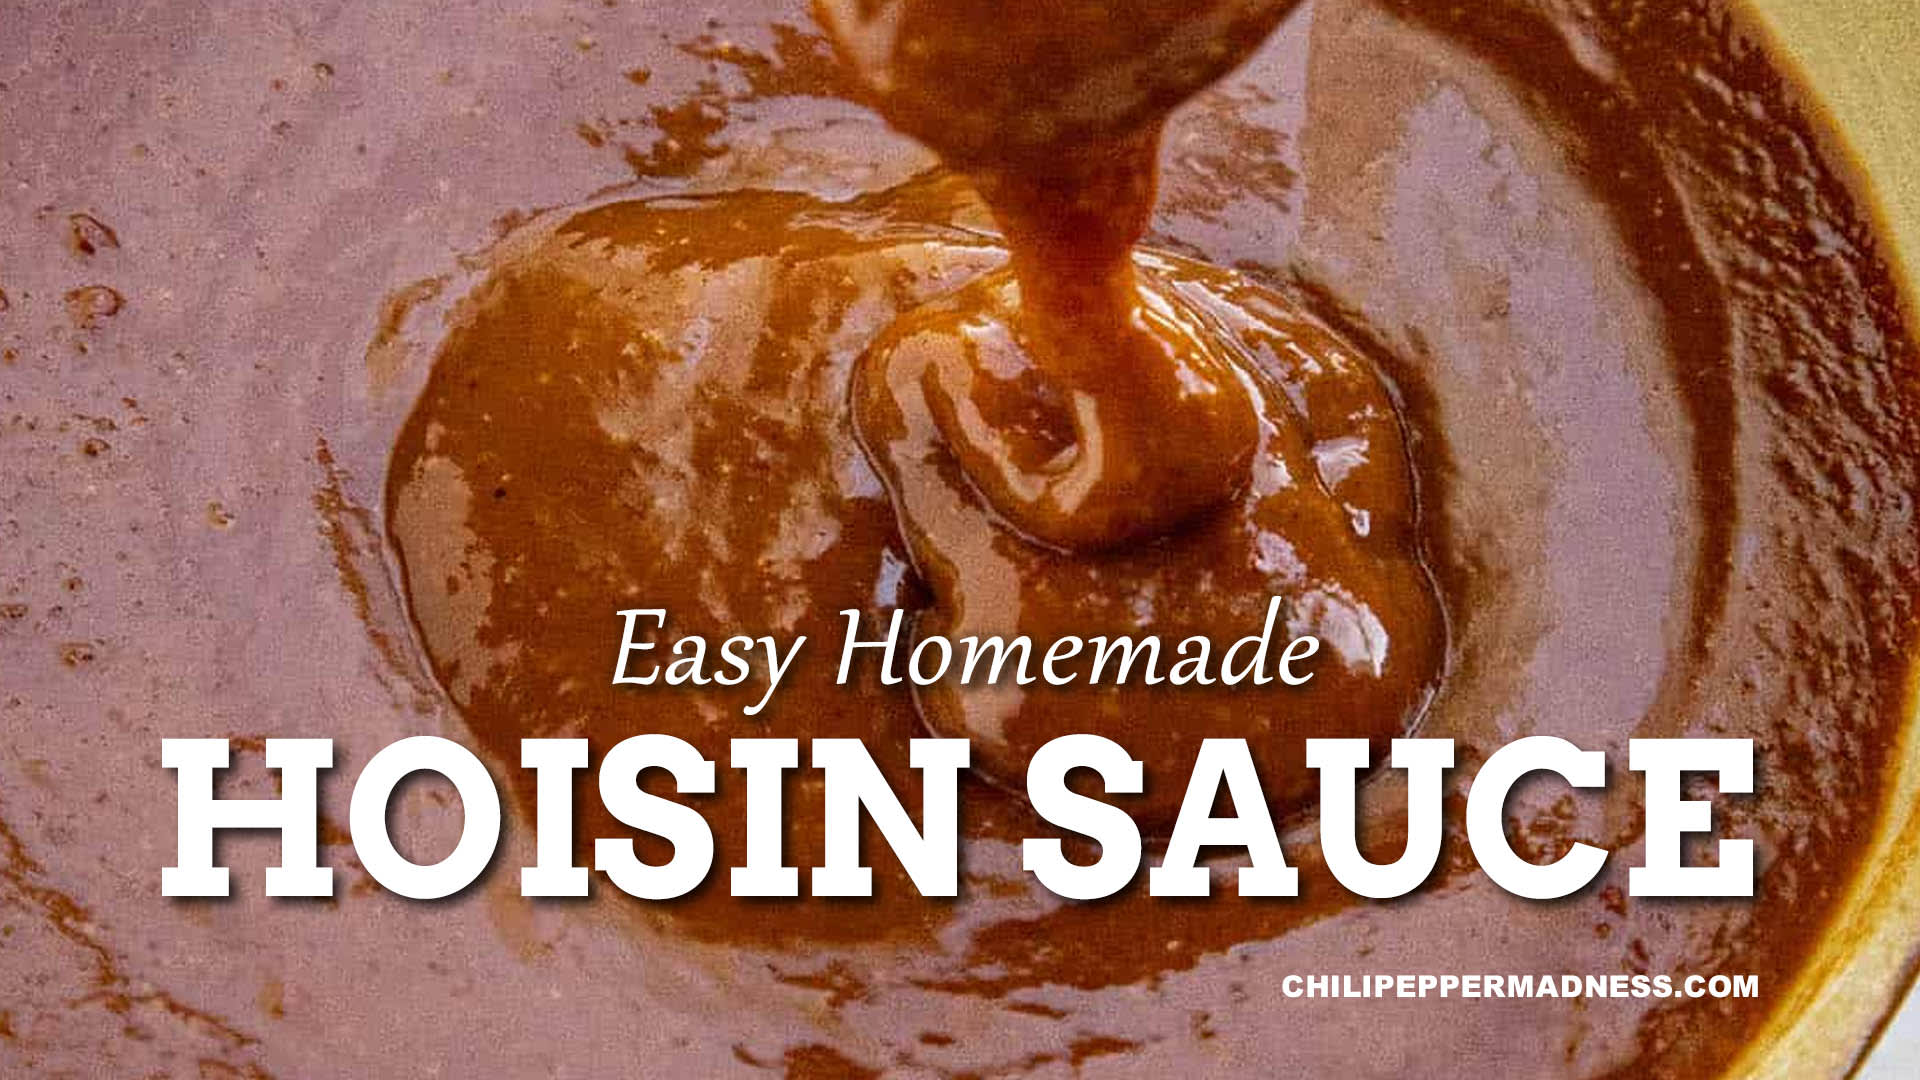 Easy Homemade Hoisin Sauce Recipe